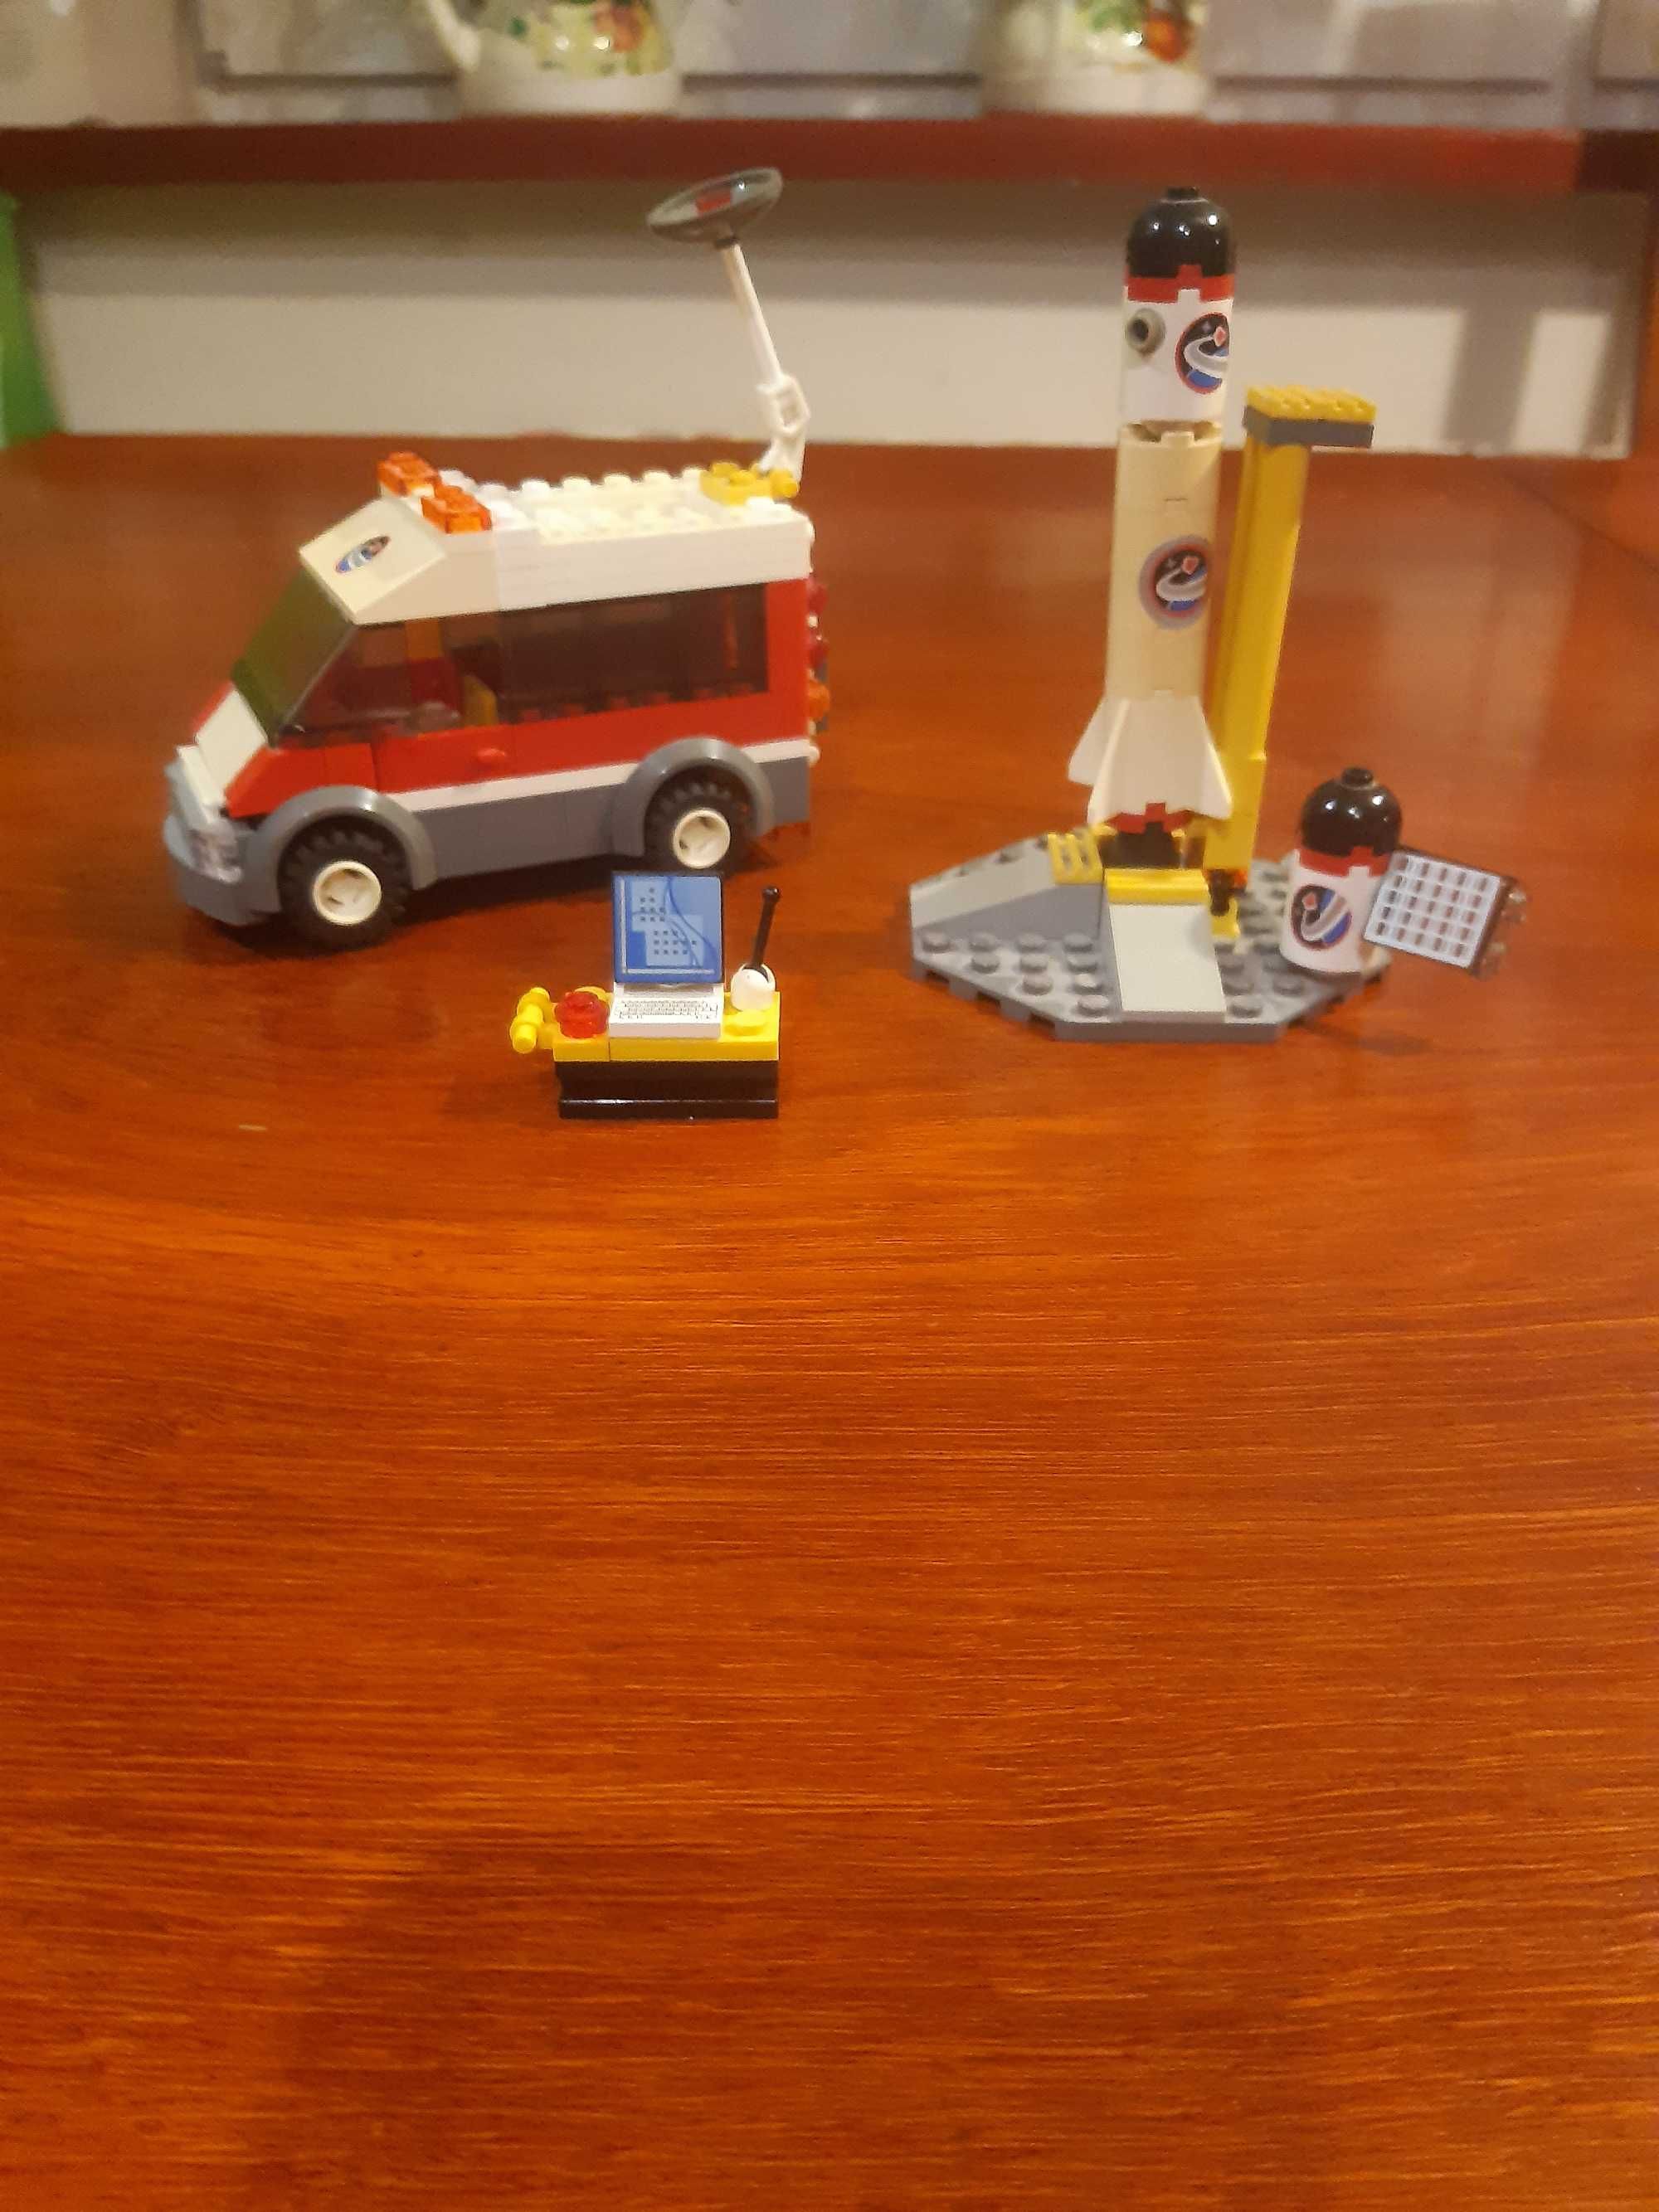 Klocki Lego City 3366 wyrzutnia rakiet